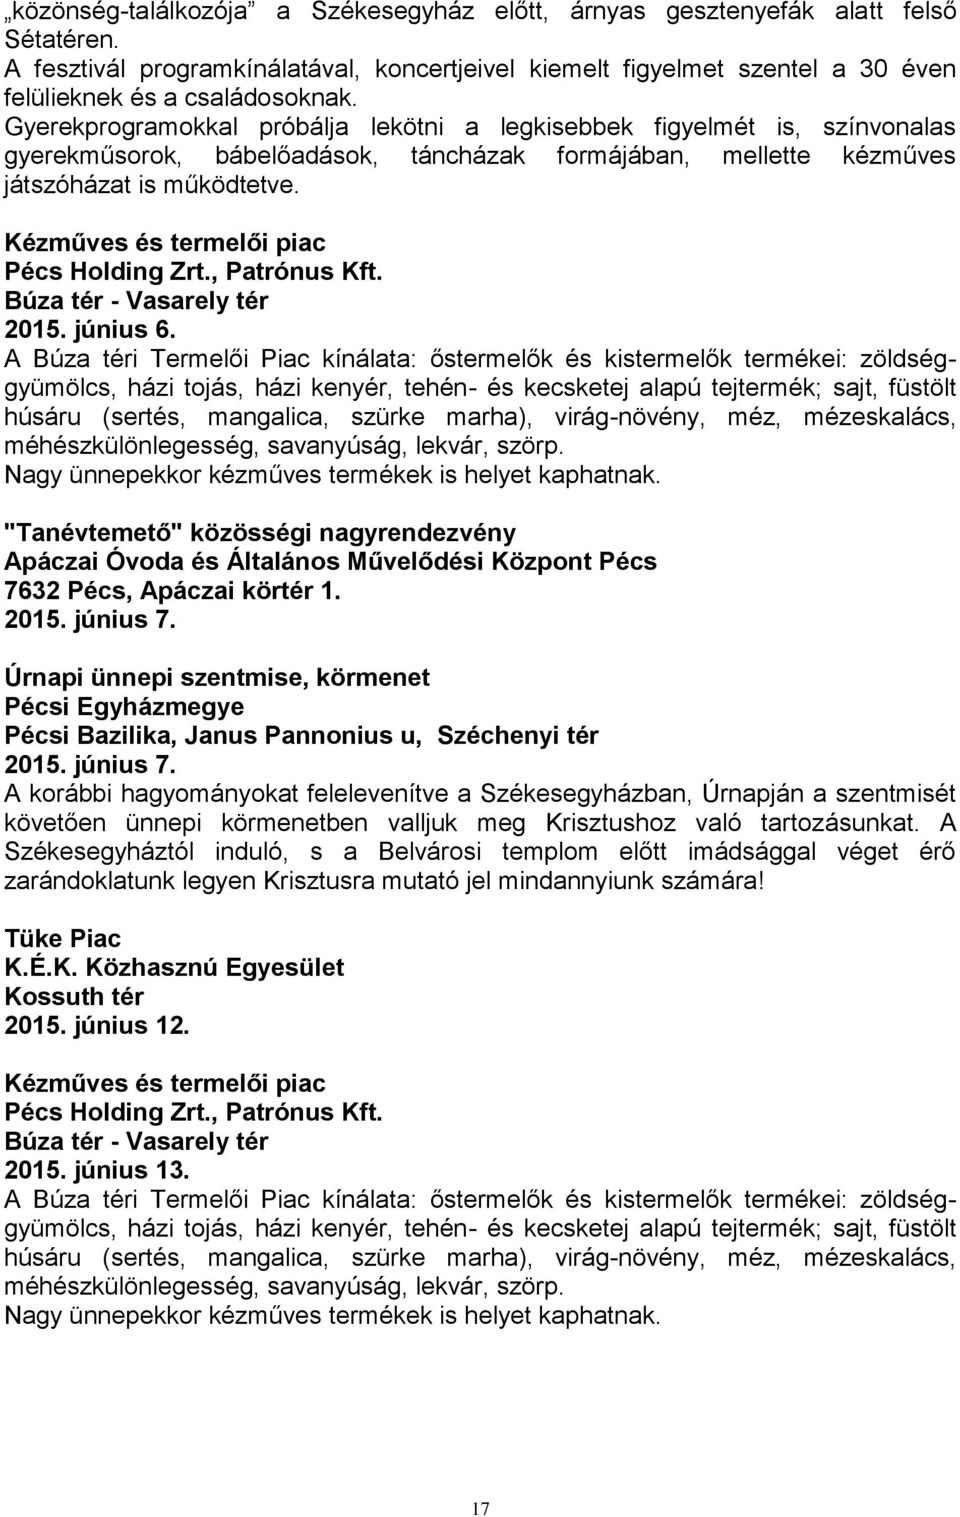 "Tanévtemető" közösségi nagyrendezvény Apáczai Óvoda és Általános Művelődési Központ Pécs 7632 Pécs, Apáczai körtér 1. 2015. június 7.